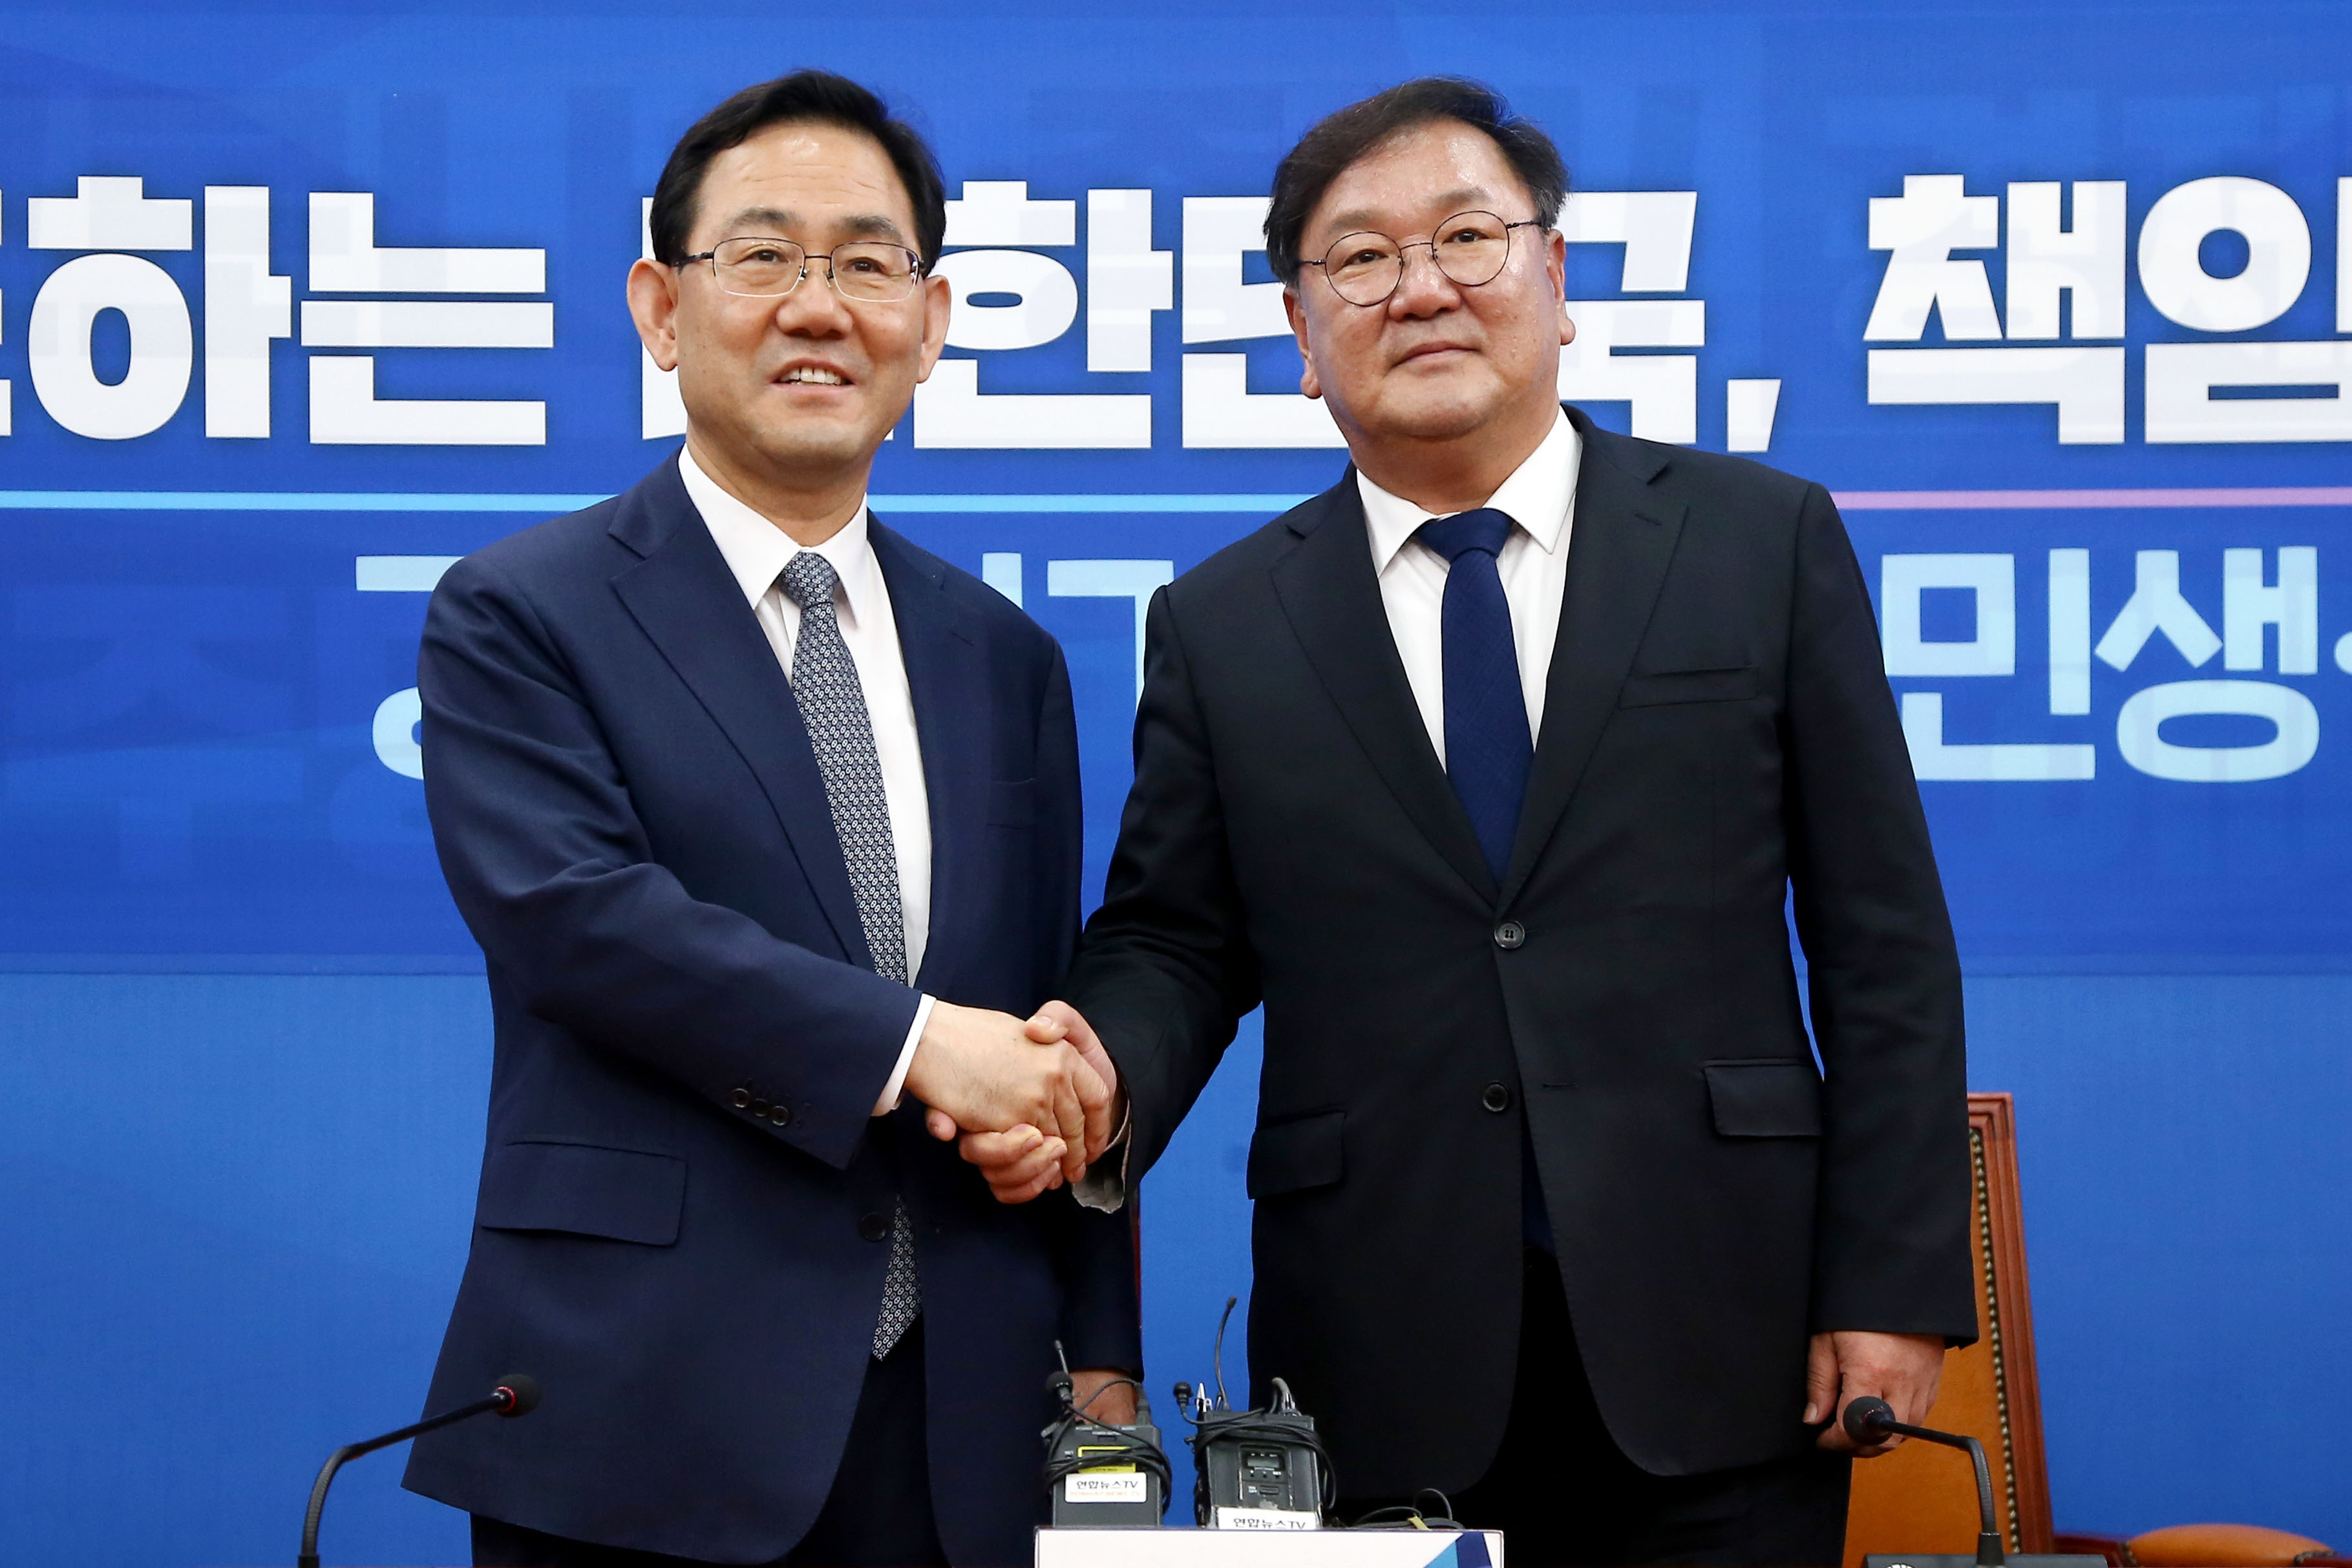  더불어민주당 김태년 원내대표(오른쪽)와 미래통합당 주호영 원내대표